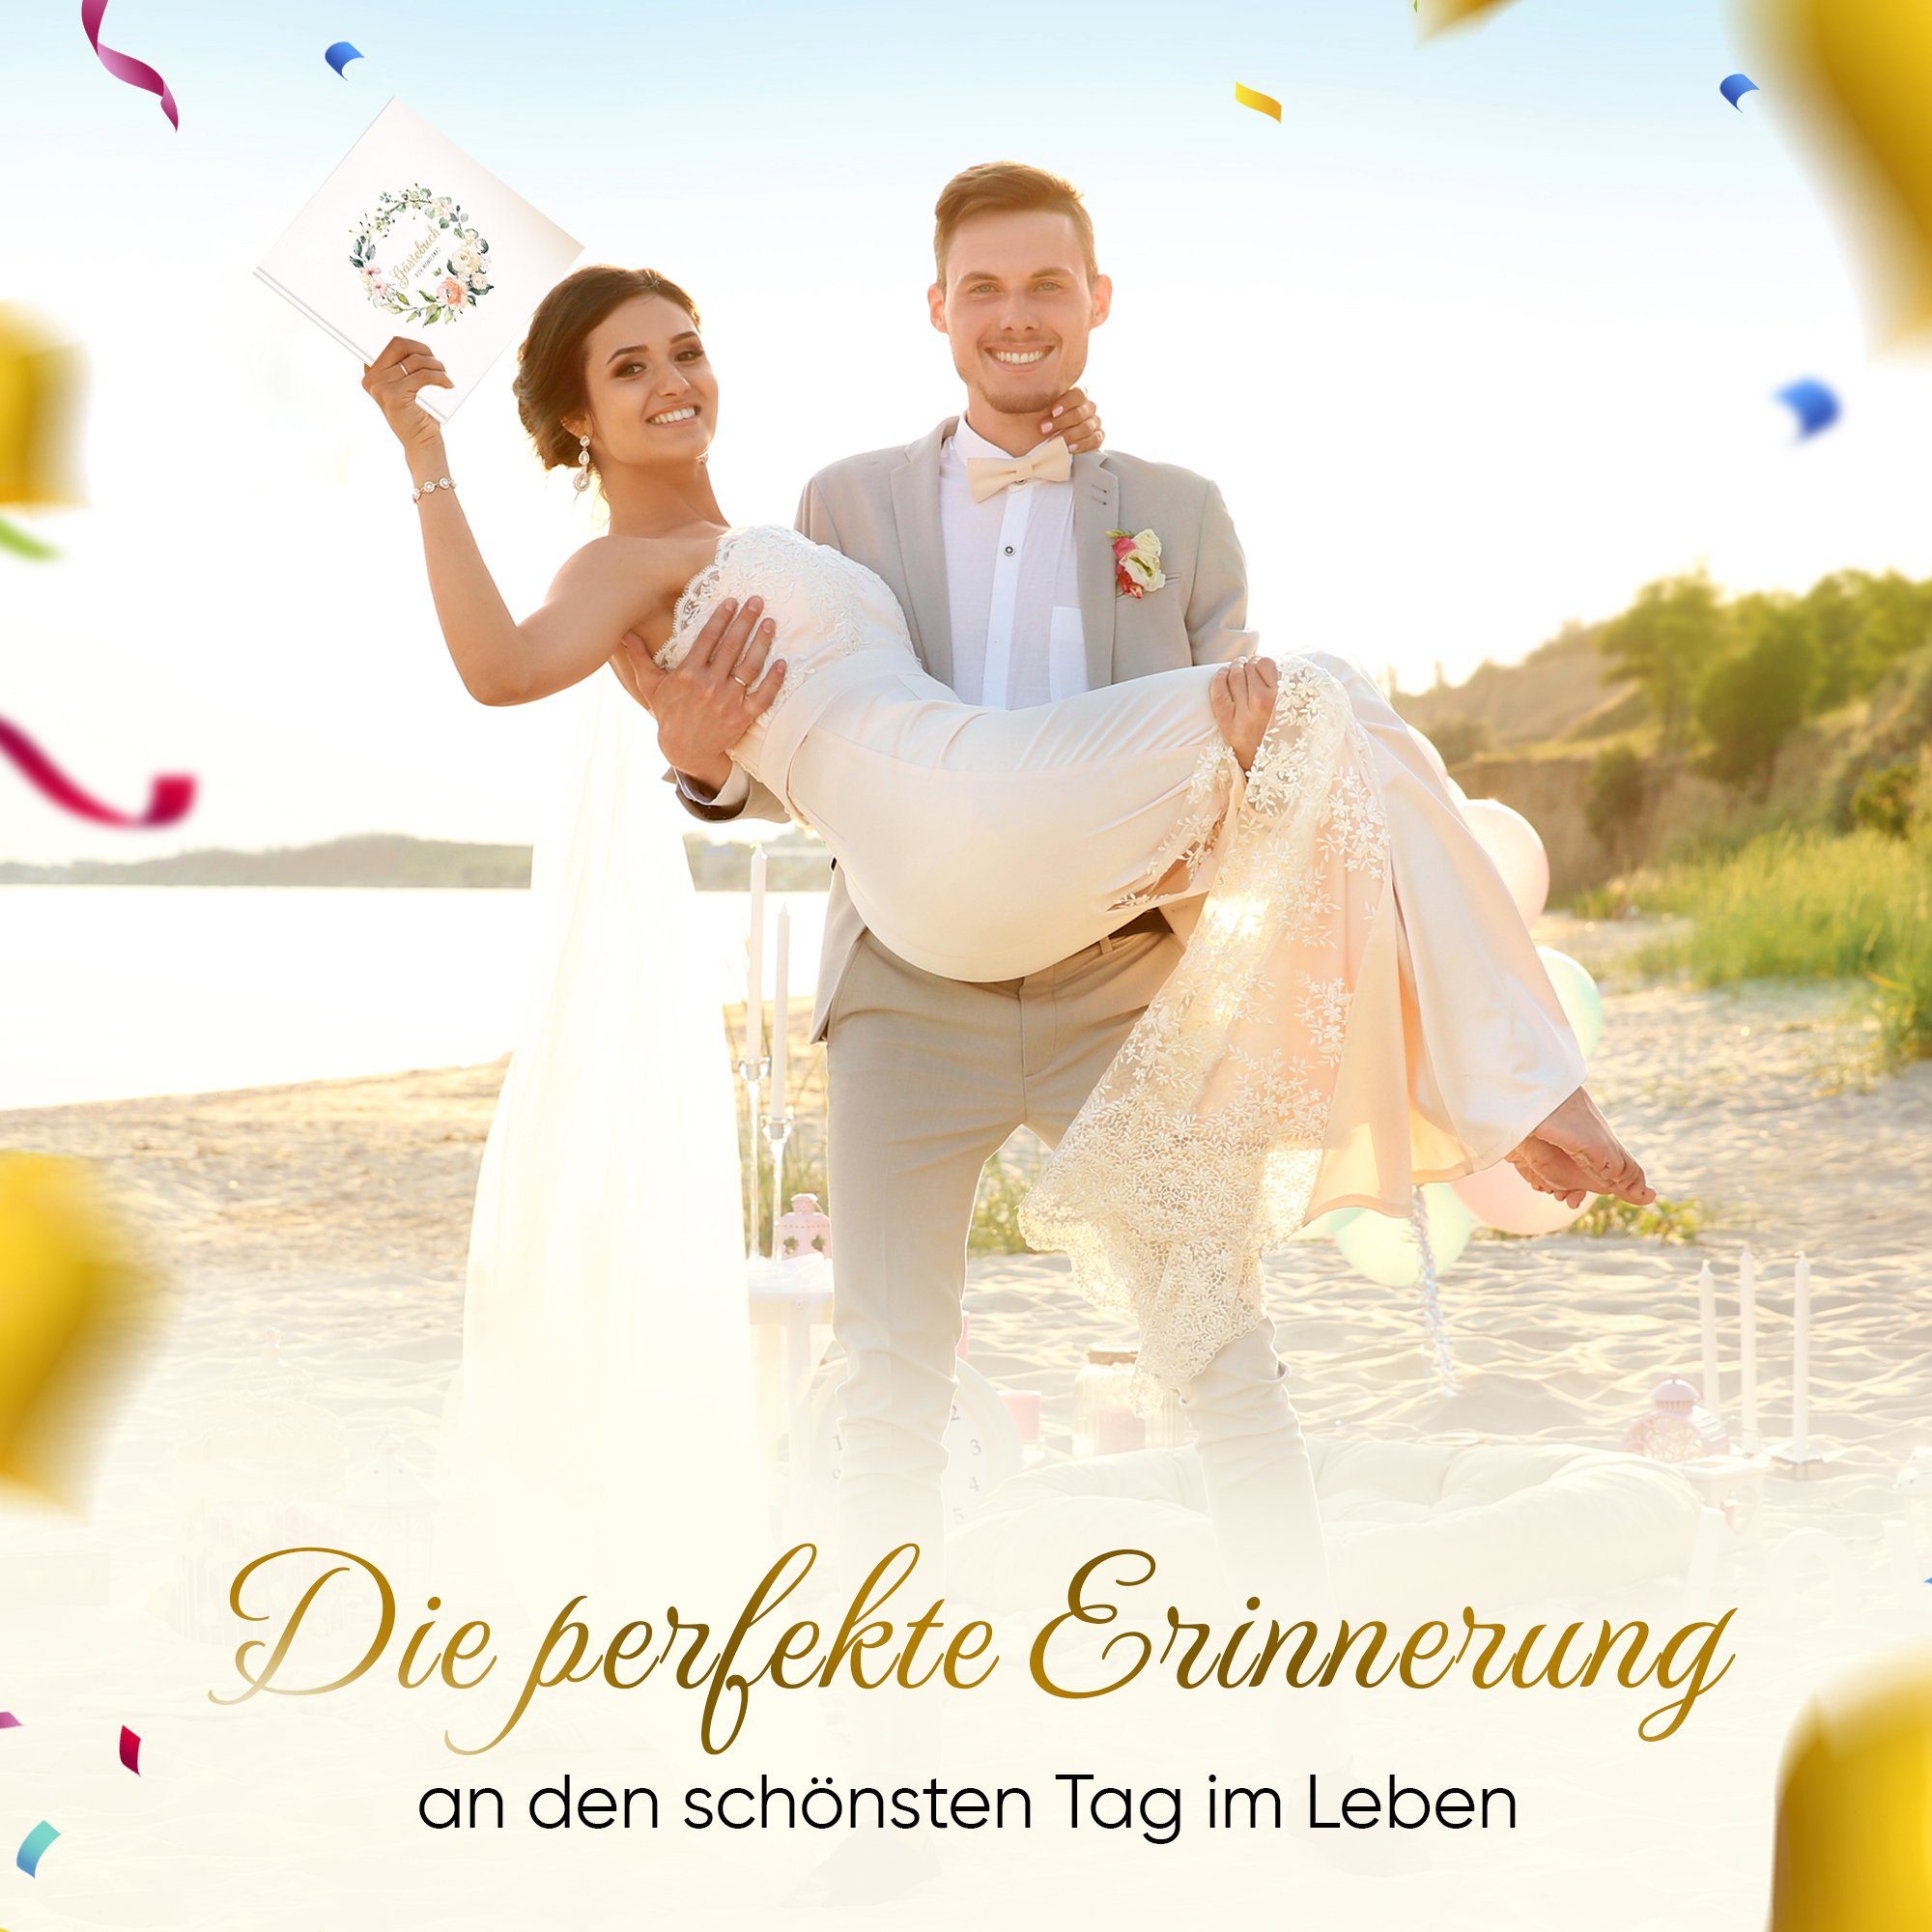 LifeDesign Notizbuch Hochzeitsbuch, Gästebuch zur stabile 21x21cm, Hardcover, edles Hochzeit, Papier Fadenbindung